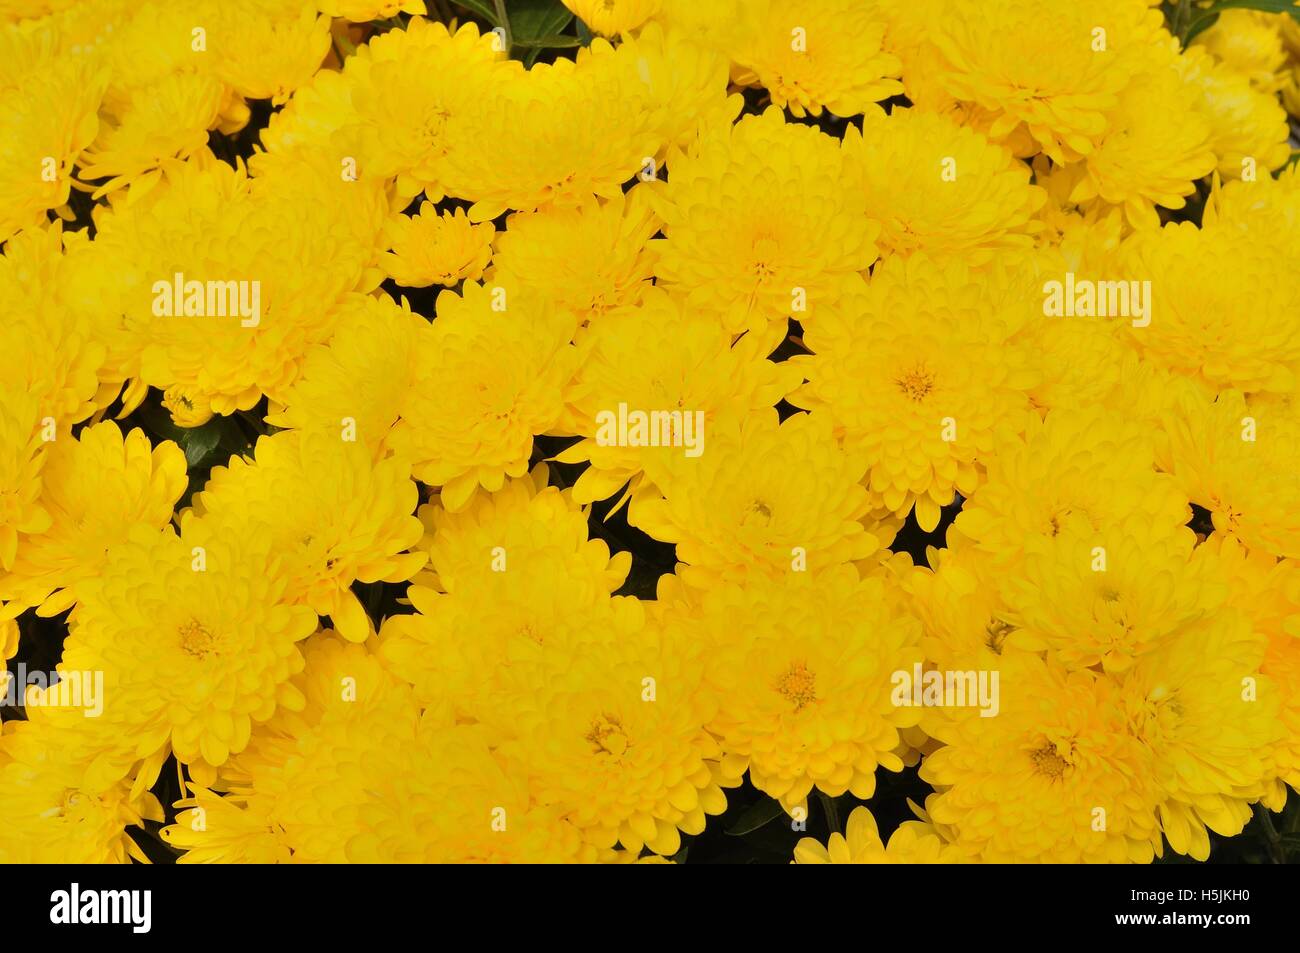 Background of yellow chrysanthemum flowers Stock Photo